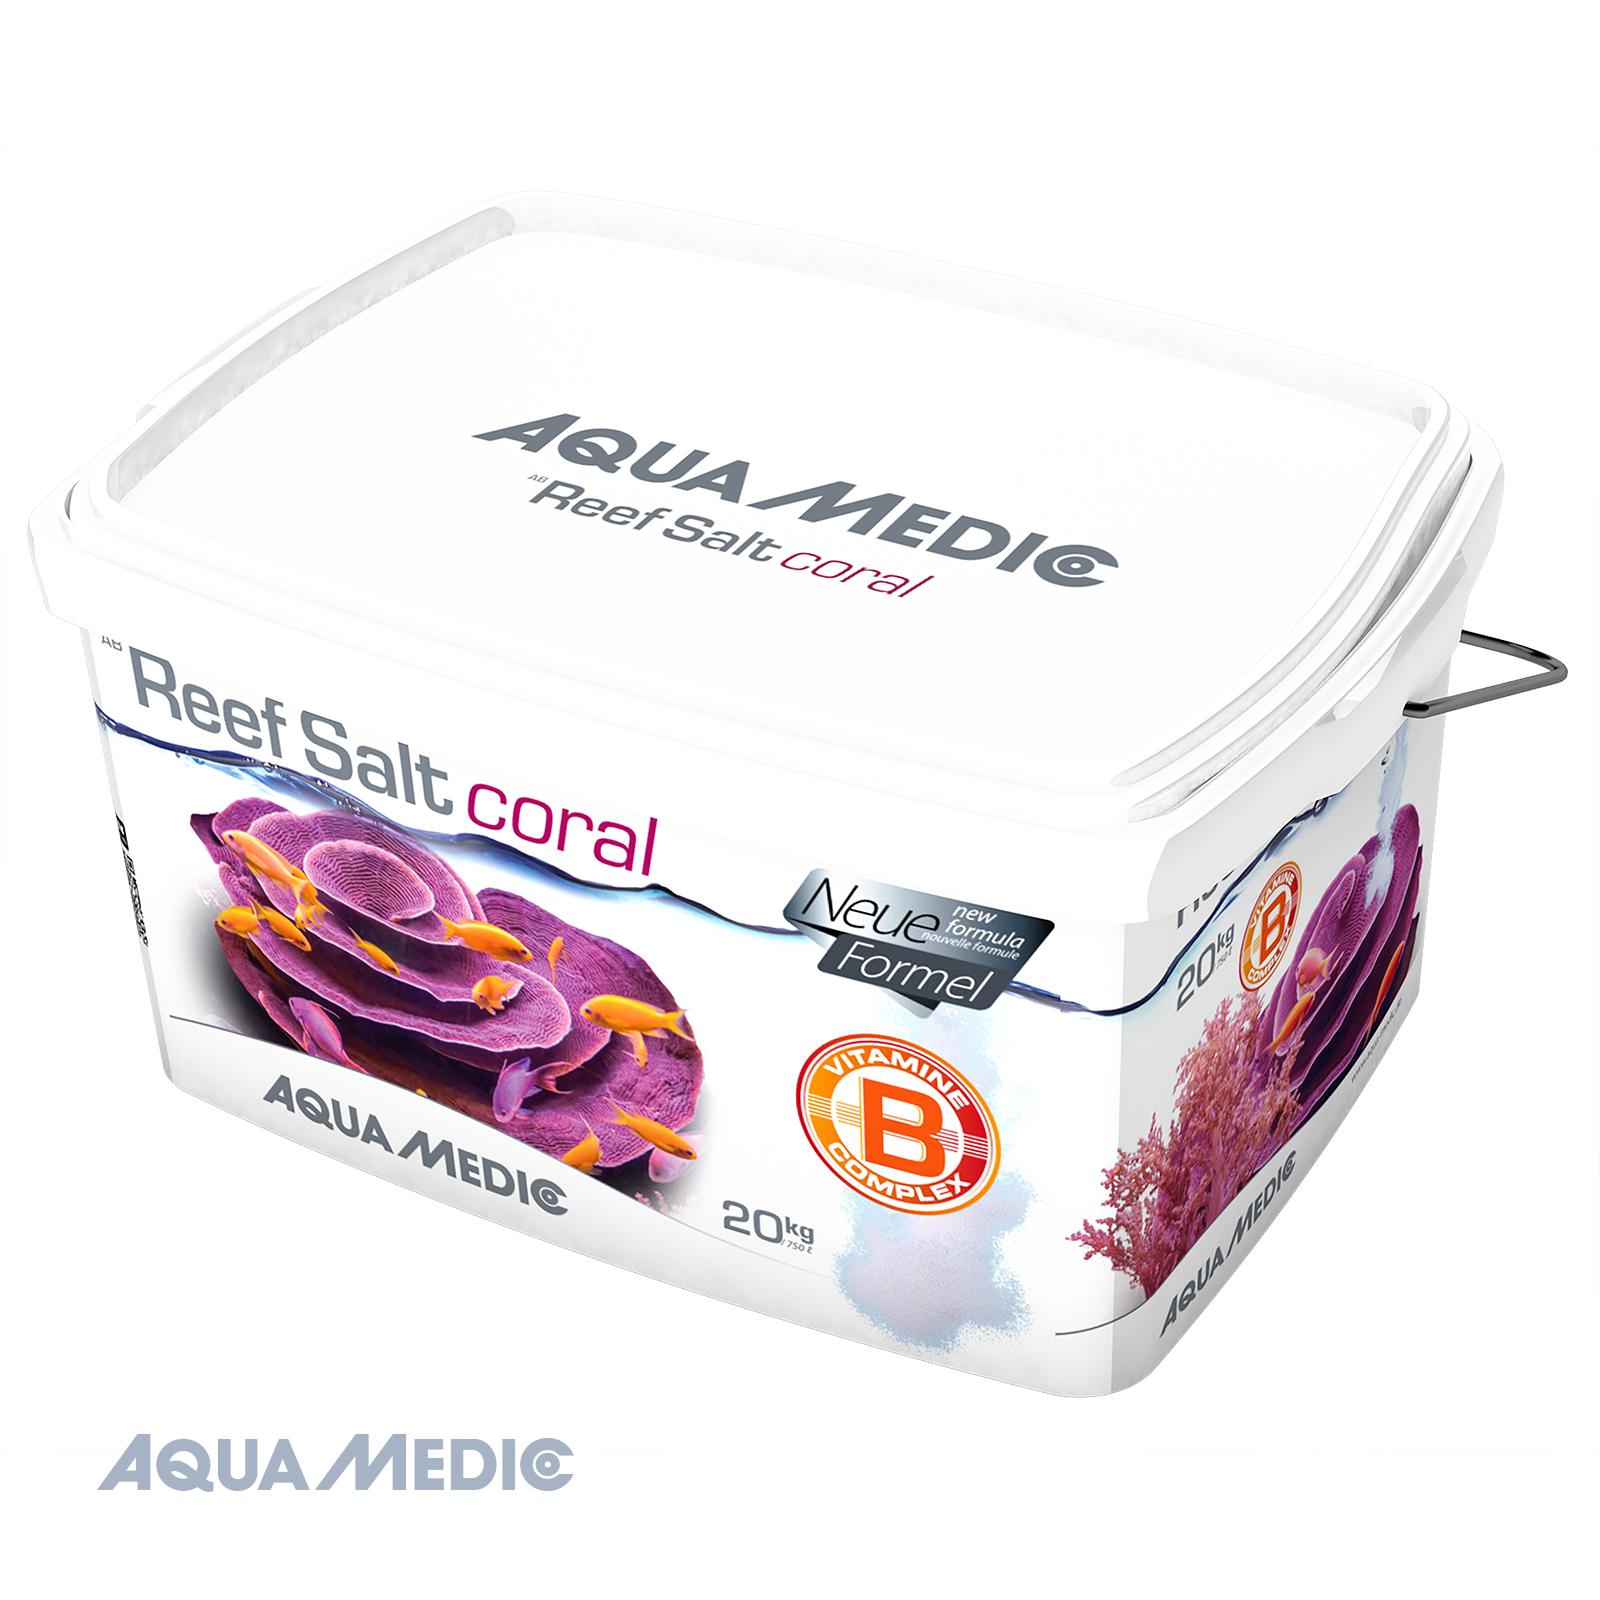 Aqua Medic Reef Salt Coral 20 kg bucket